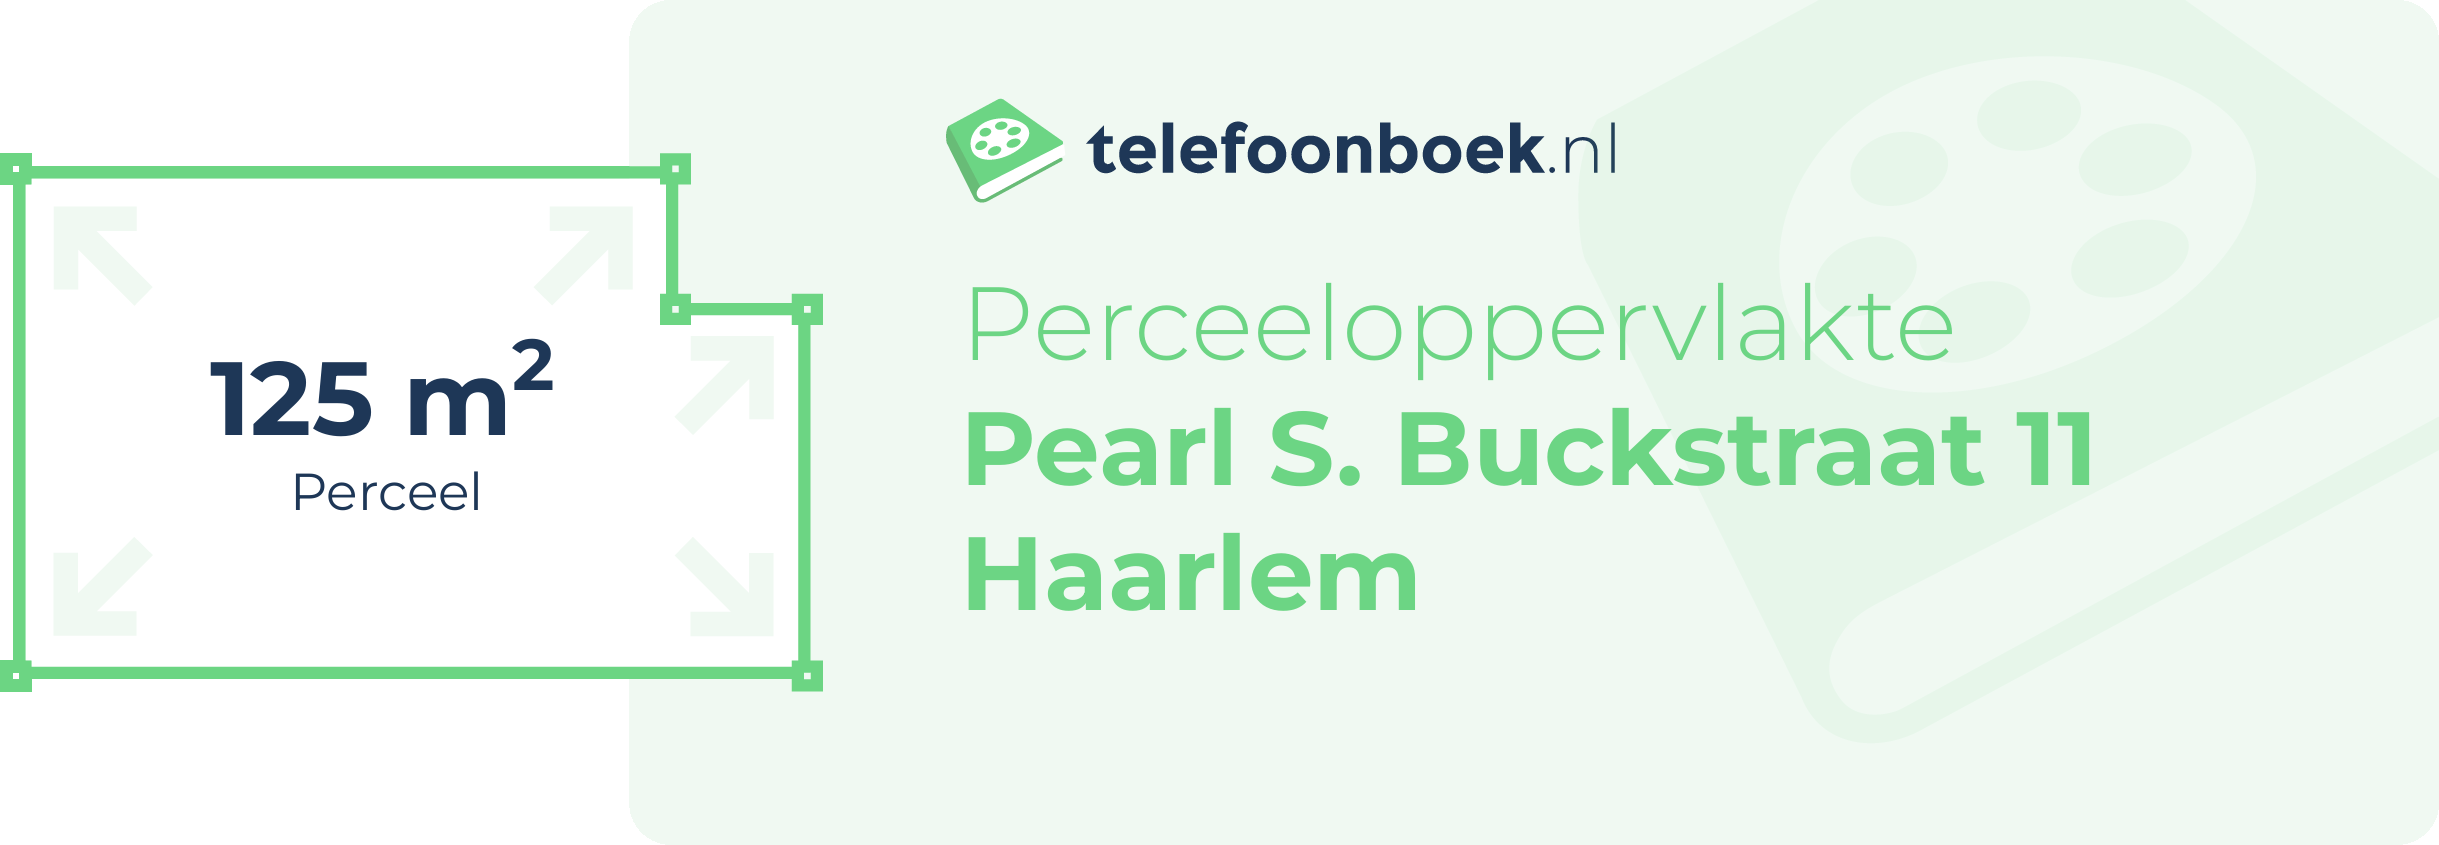 Perceeloppervlakte Pearl S. Buckstraat 11 Haarlem